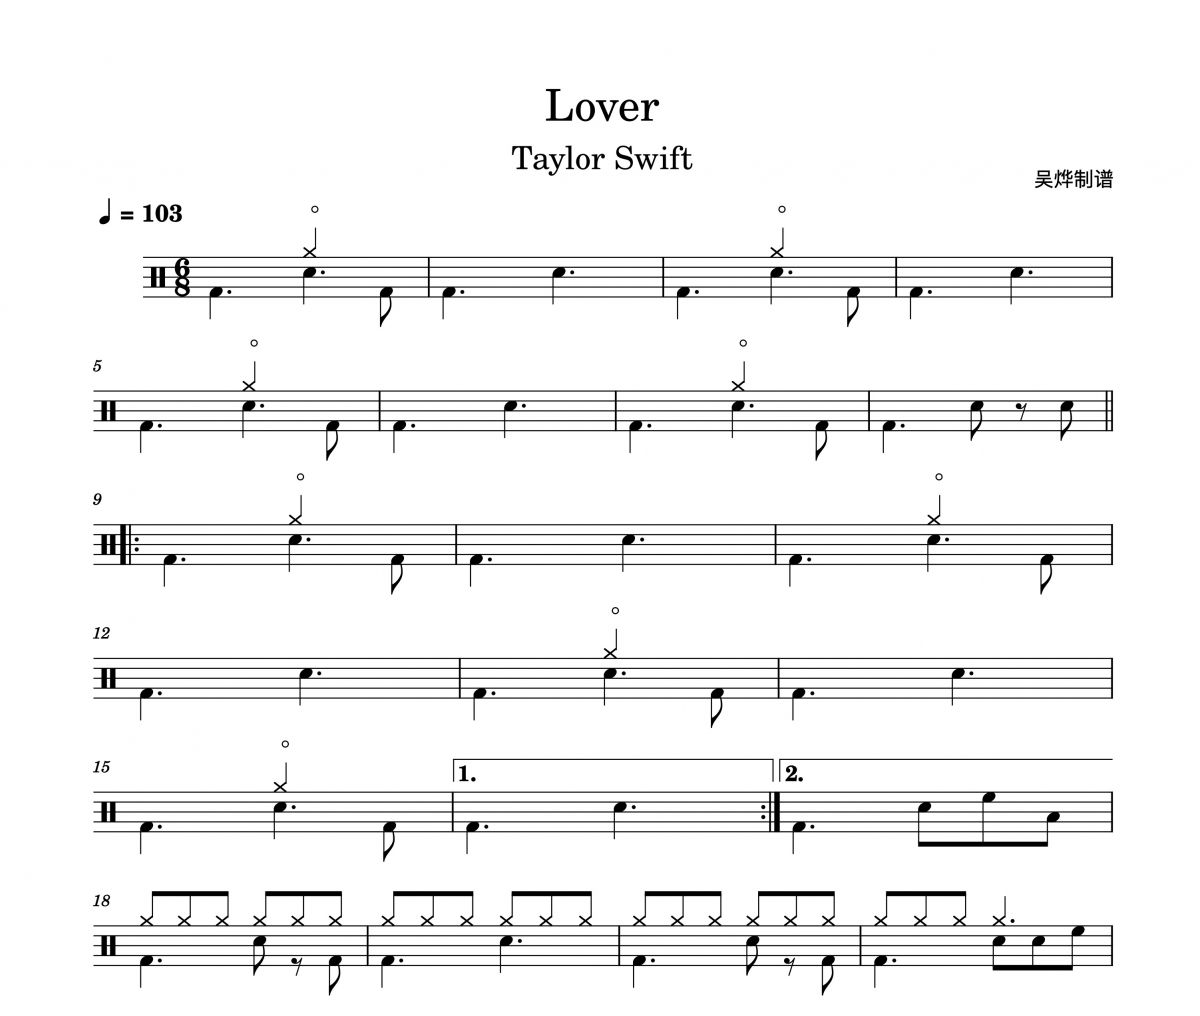 泰勒·斯威夫特-Lover架子鼓谱爵士鼓曲谱